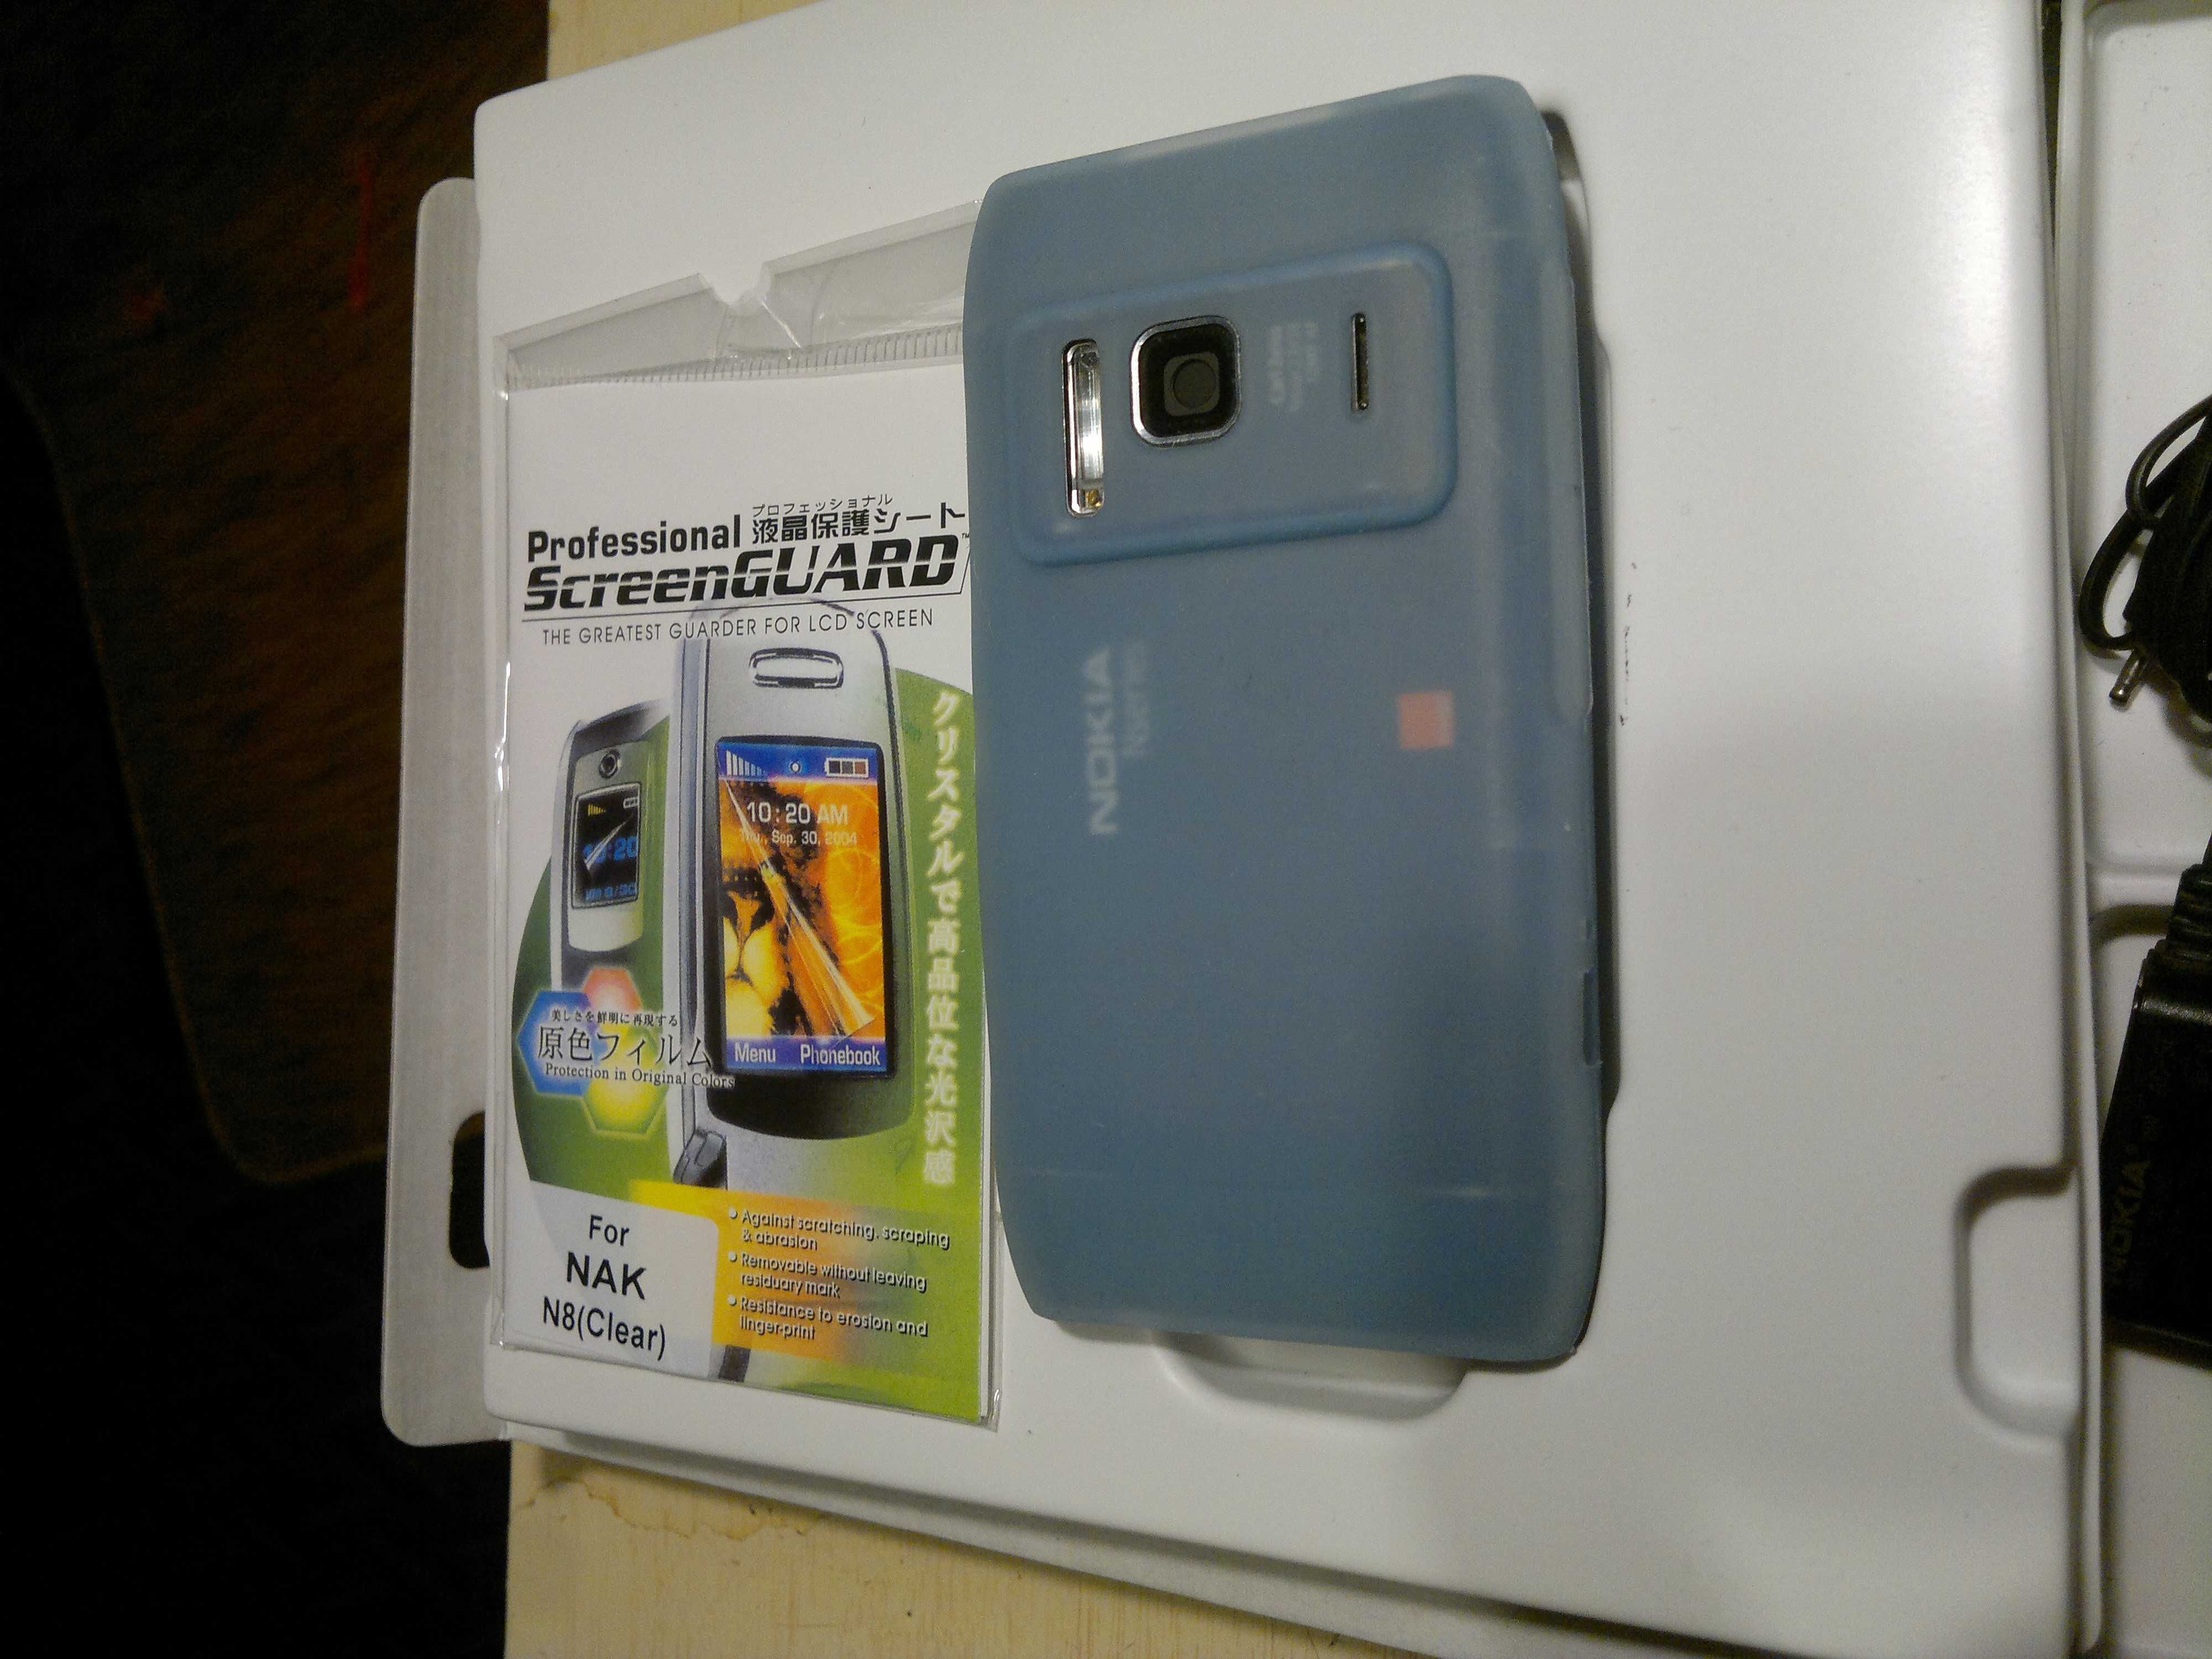 Nokia N8 w komplecie z pudełkiem, nowym etui i folią